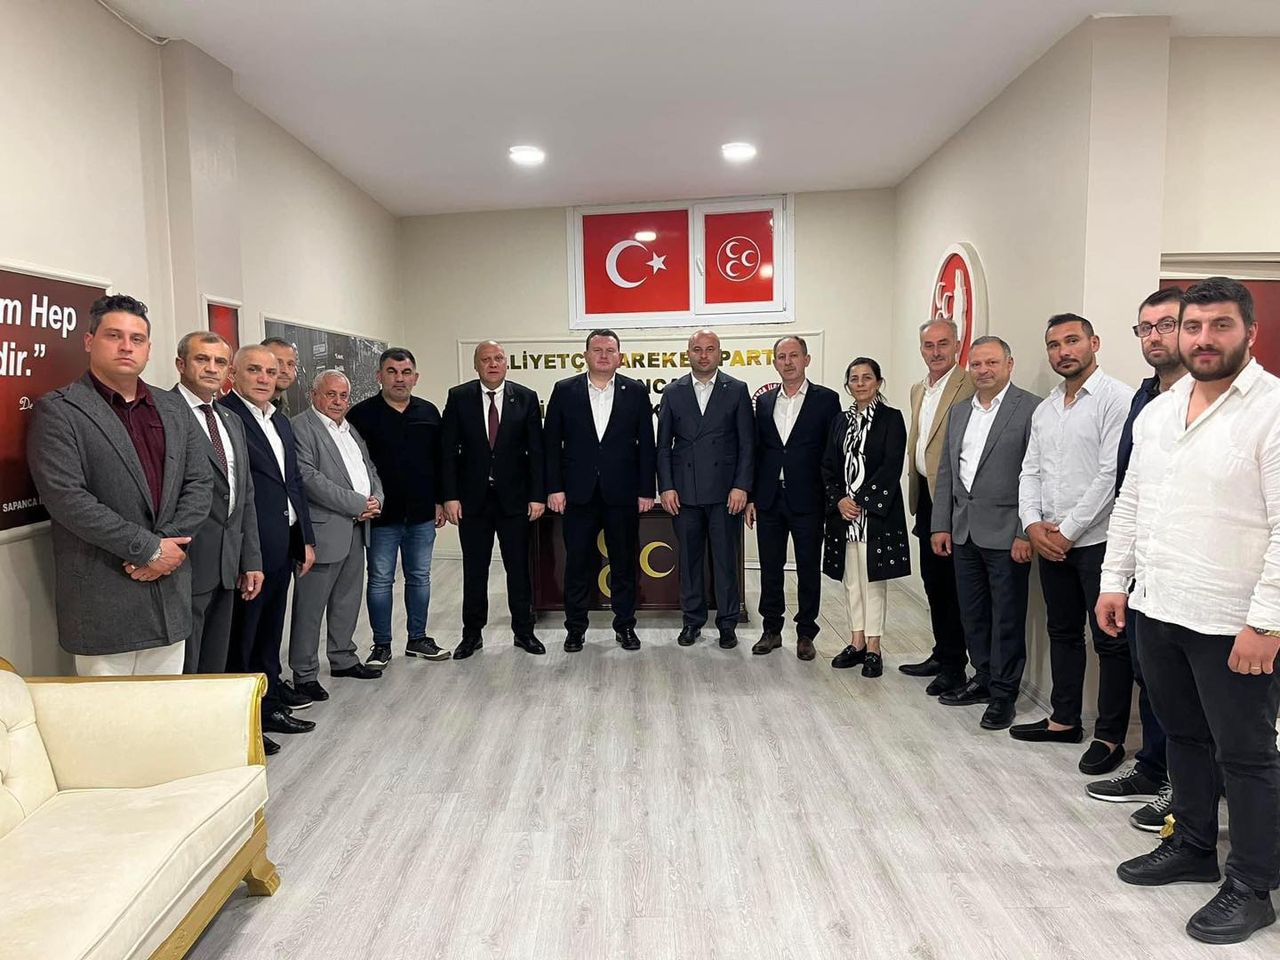  MHP Milletvekili Muhammed Levent Bülbül Sakarya'da Teşkilat Ziyaretlerinde Bulundu 